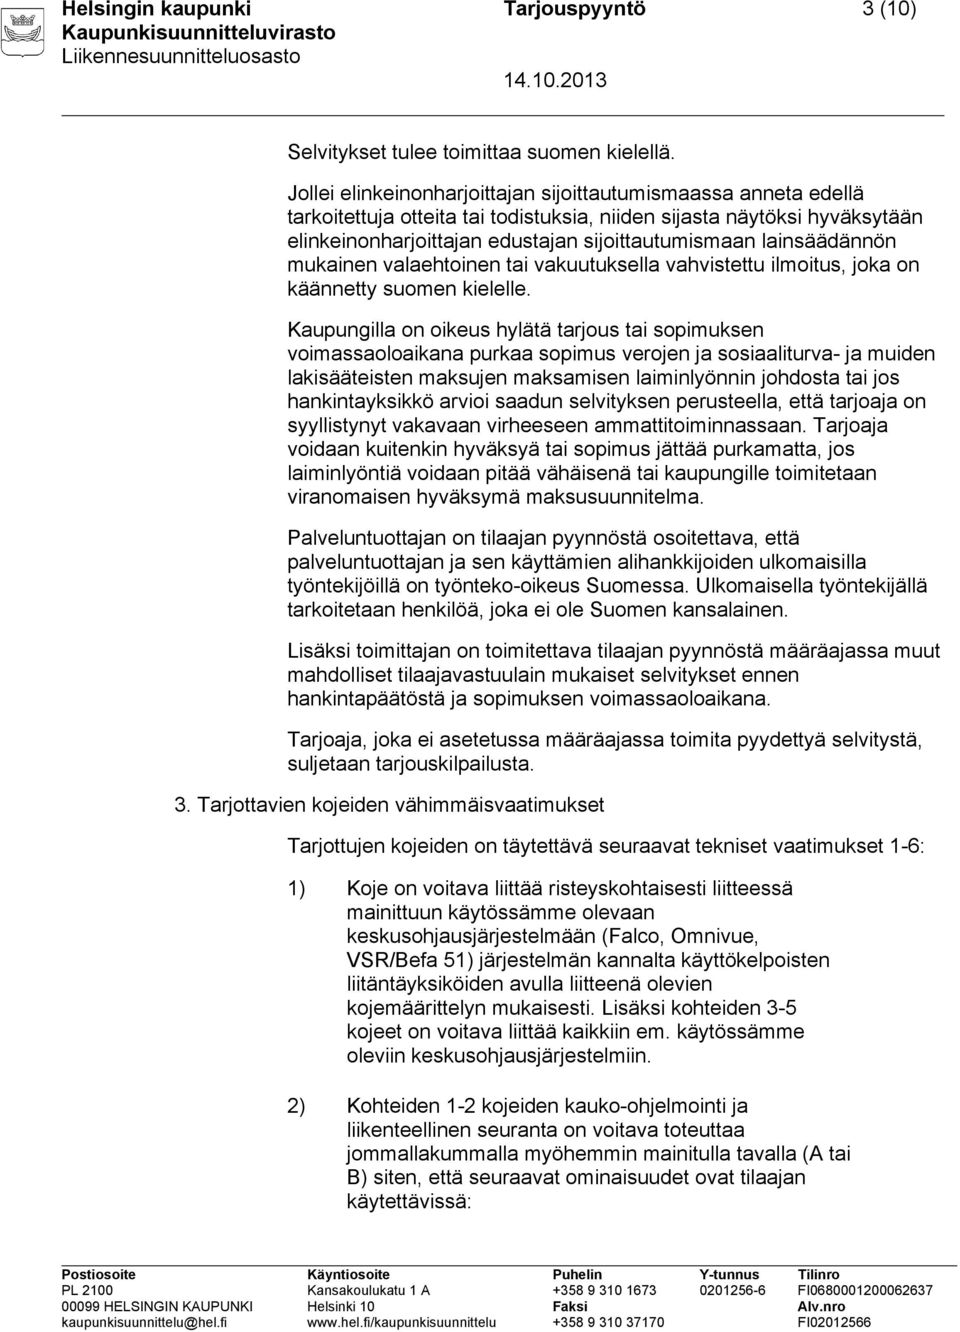 lainsäädännön mukainen valaehtoinen tai vakuutuksella vahvistettu ilmoitus, joka on käännetty suomen kielelle.